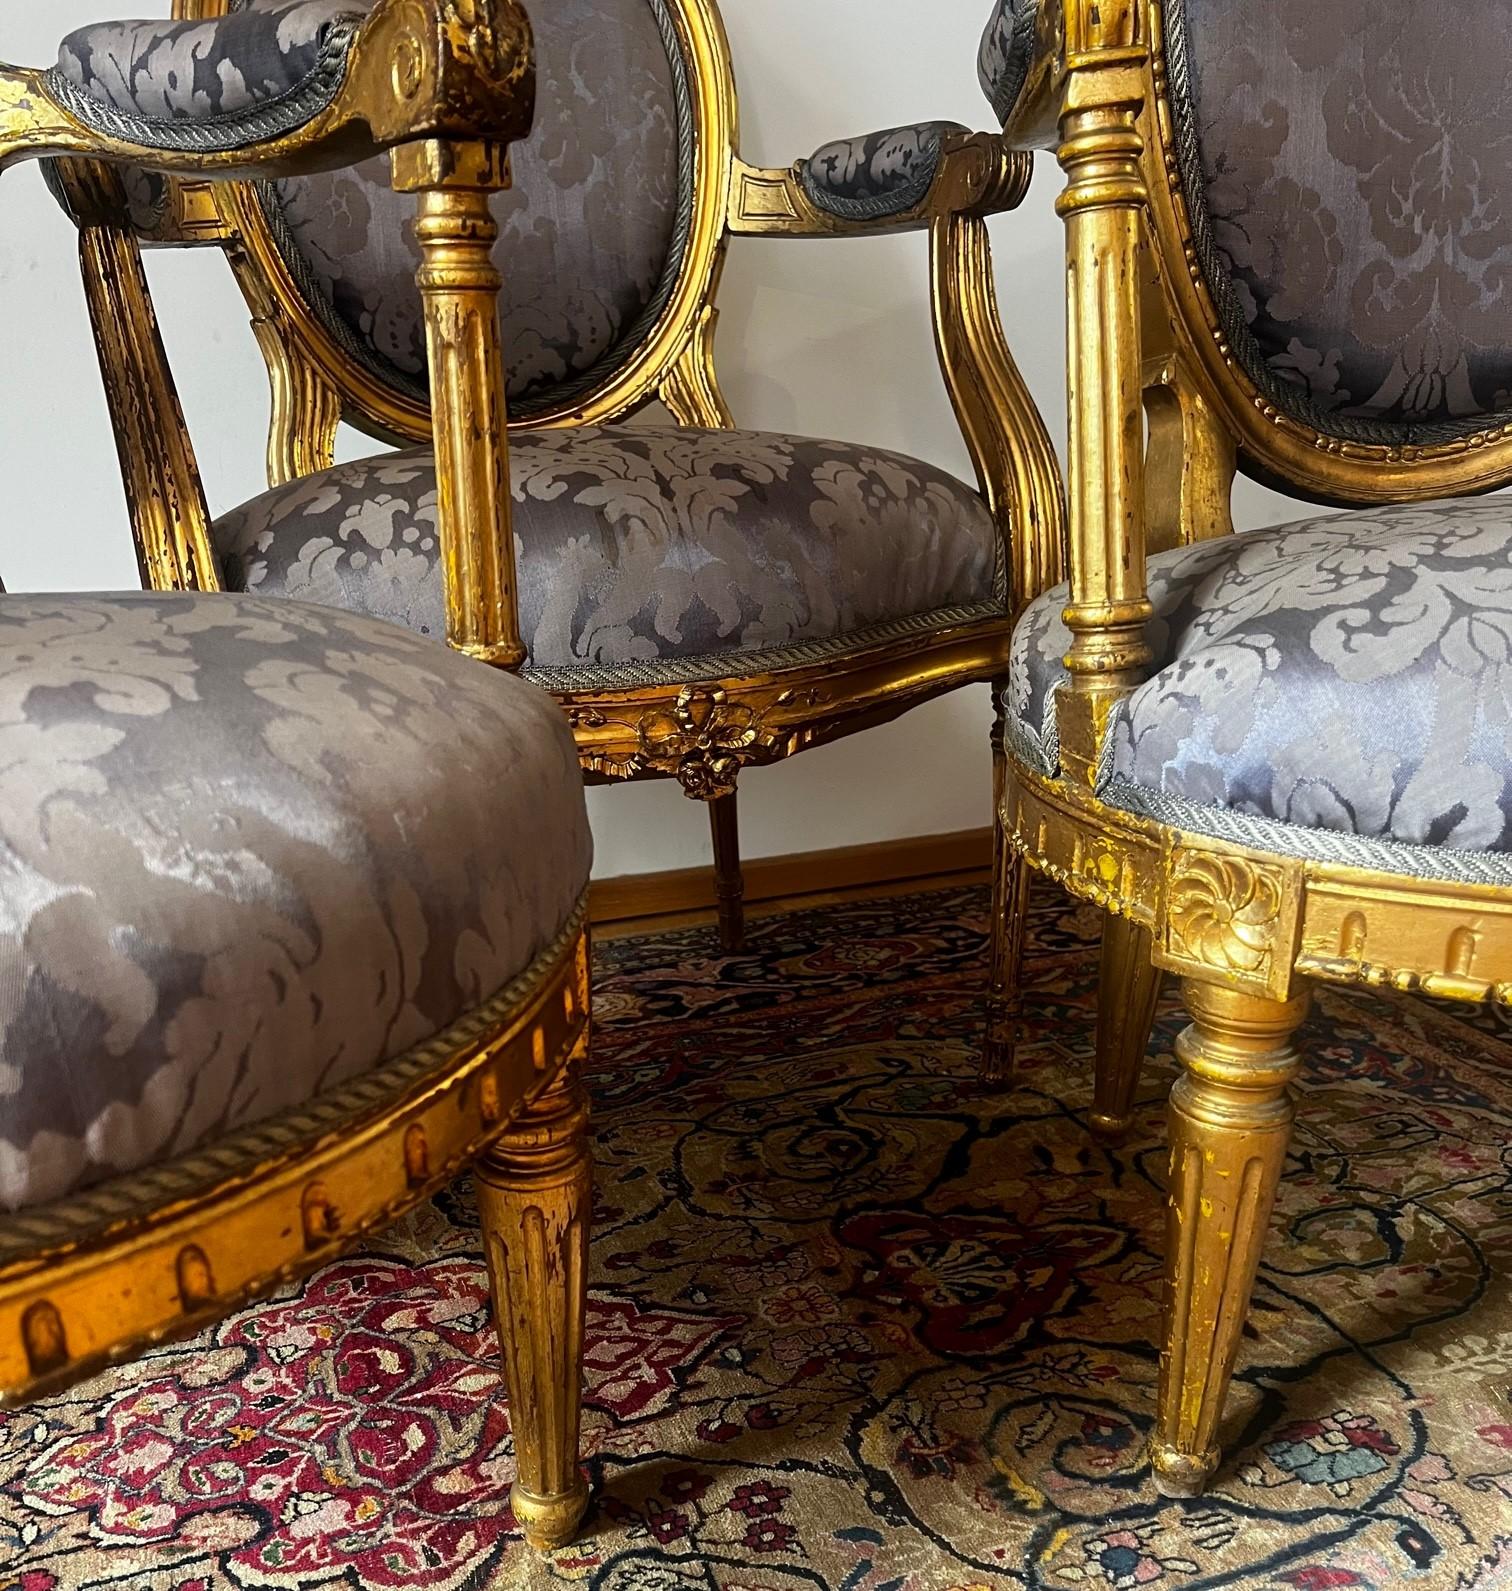 Dieser prächtige Satz von drei antiken französischen Louis XVI (ca. 1770) vergoldeten Sesseln stammt aus der Region von Avignon. Diese atemberaubenden Originalsessel sind elegant und charakteristisch für eine Epoche - die meisten Möbel dieser Zeit